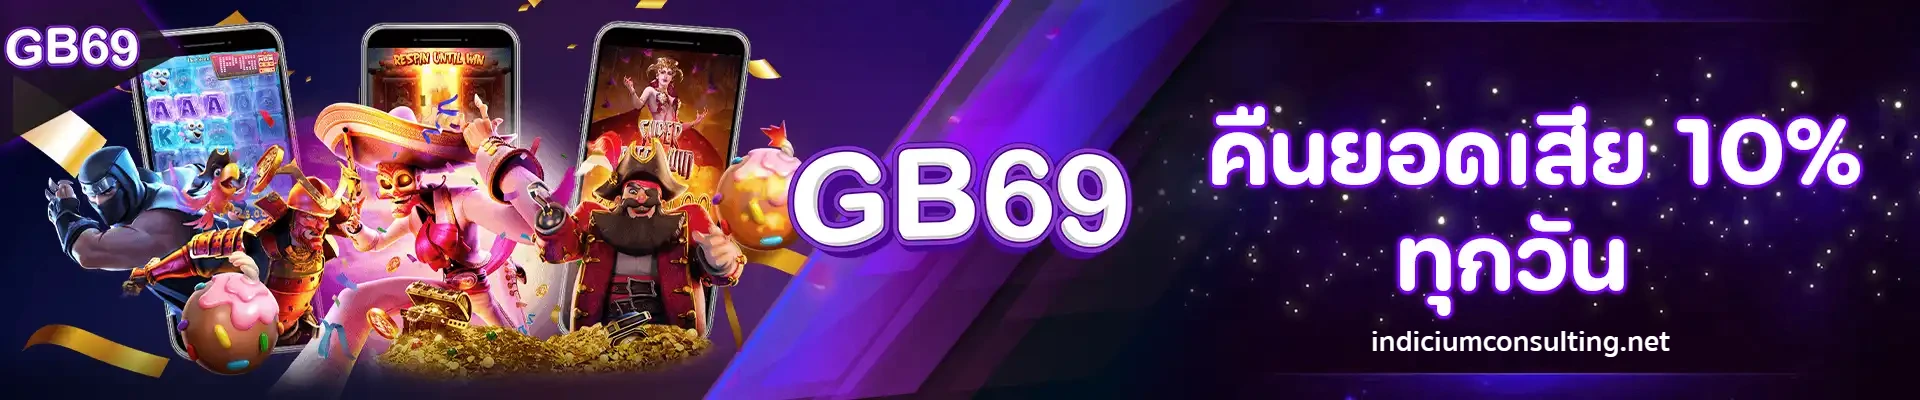 gb69 สล็อต